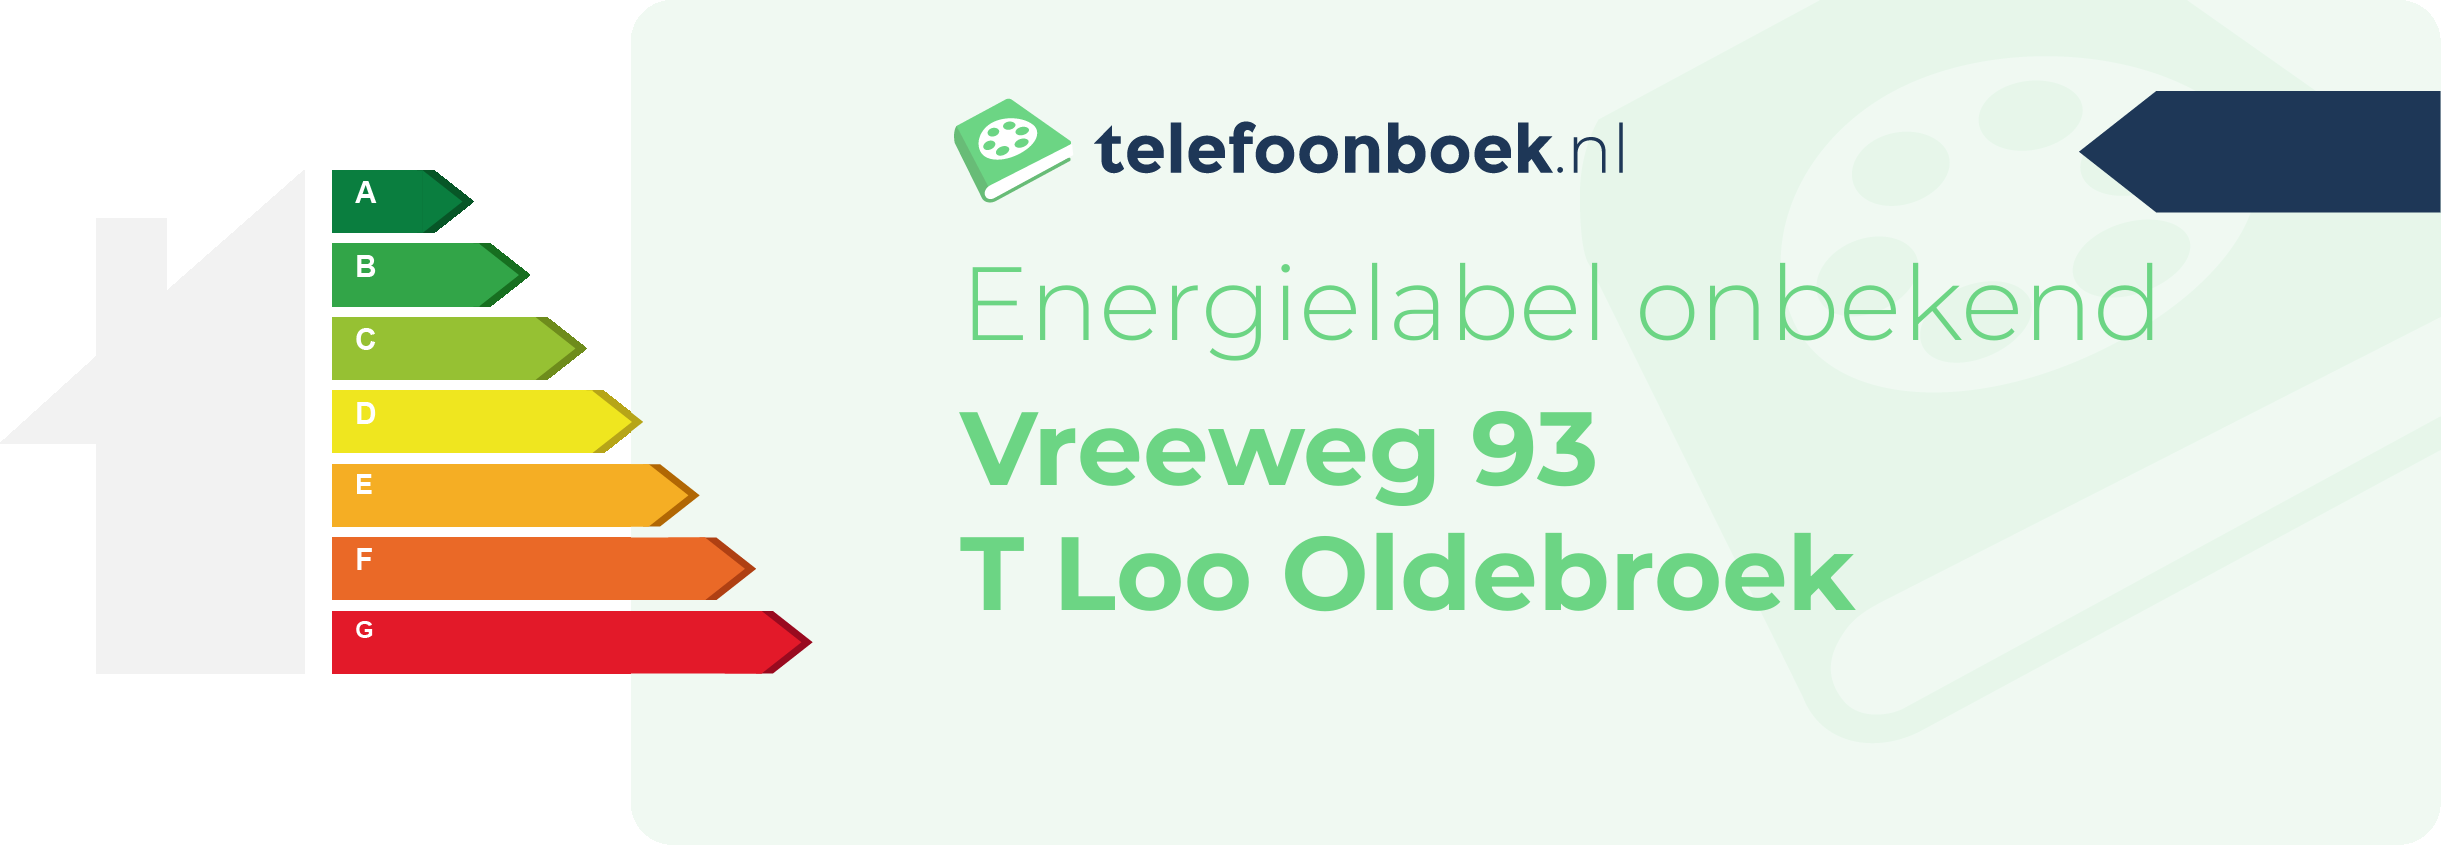 Energielabel Vreeweg 93 T Loo Oldebroek